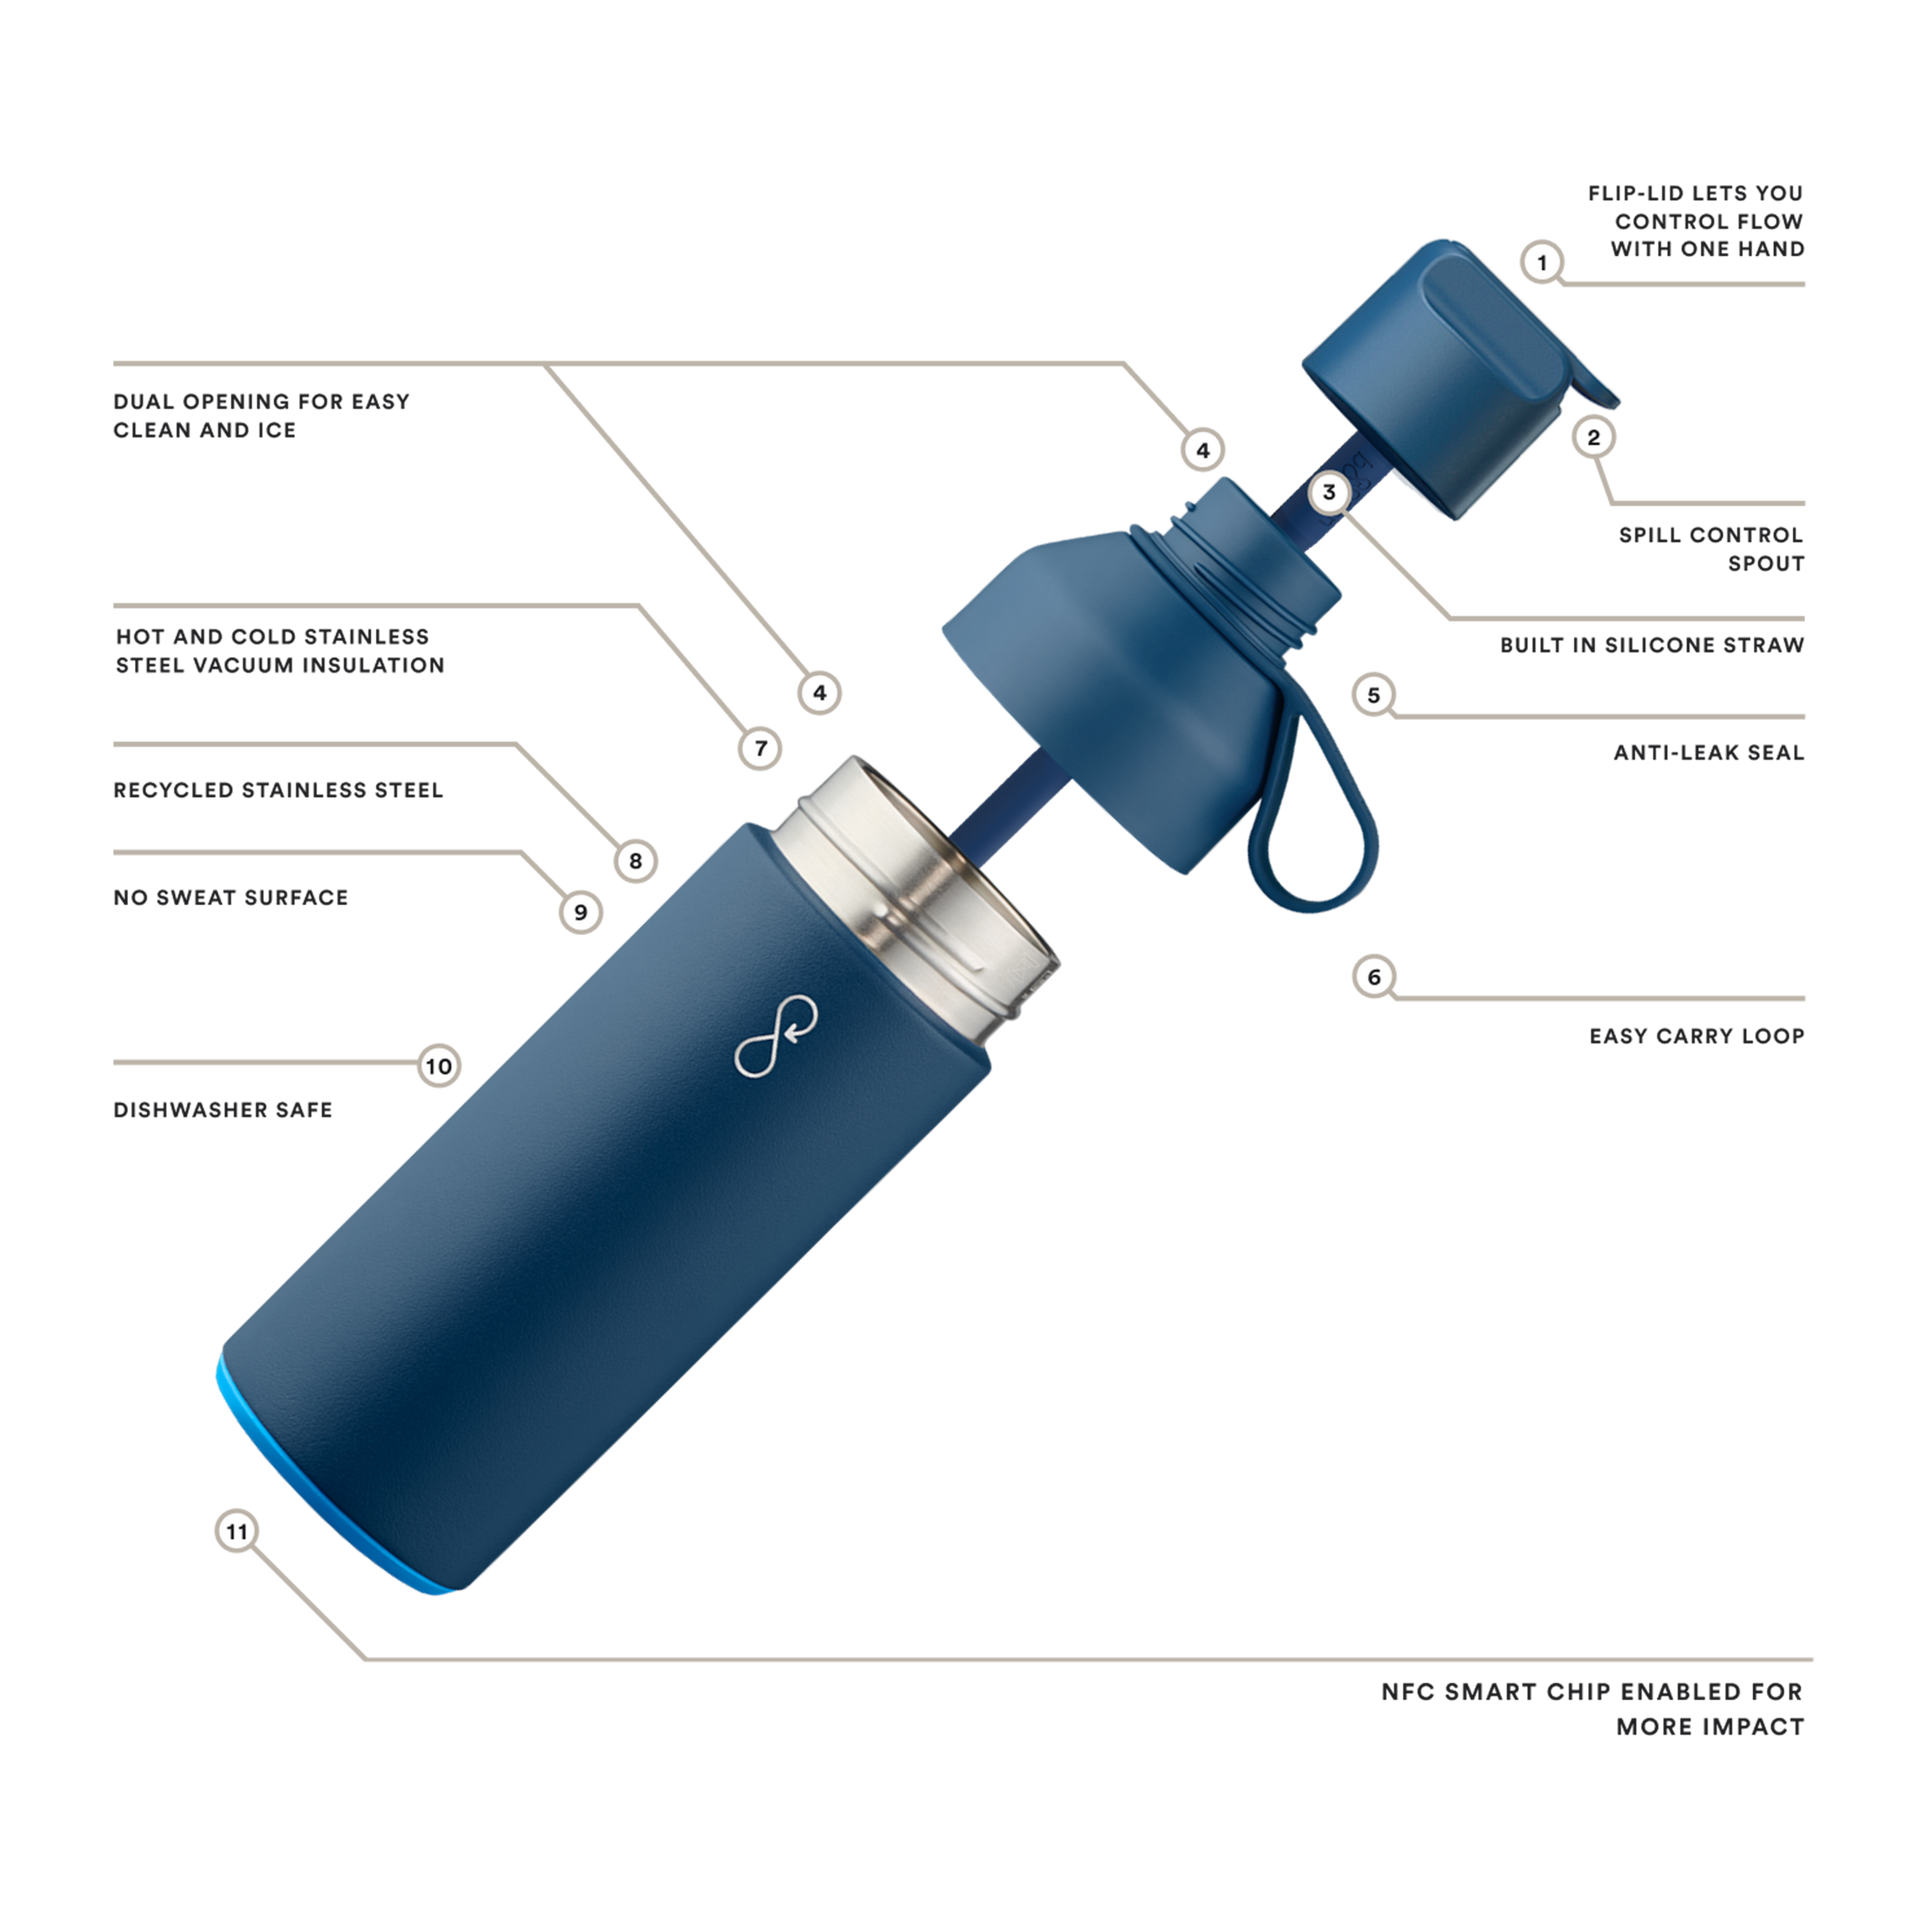 Ocean Blue Water Bottle with Straw » Ocean Bottle